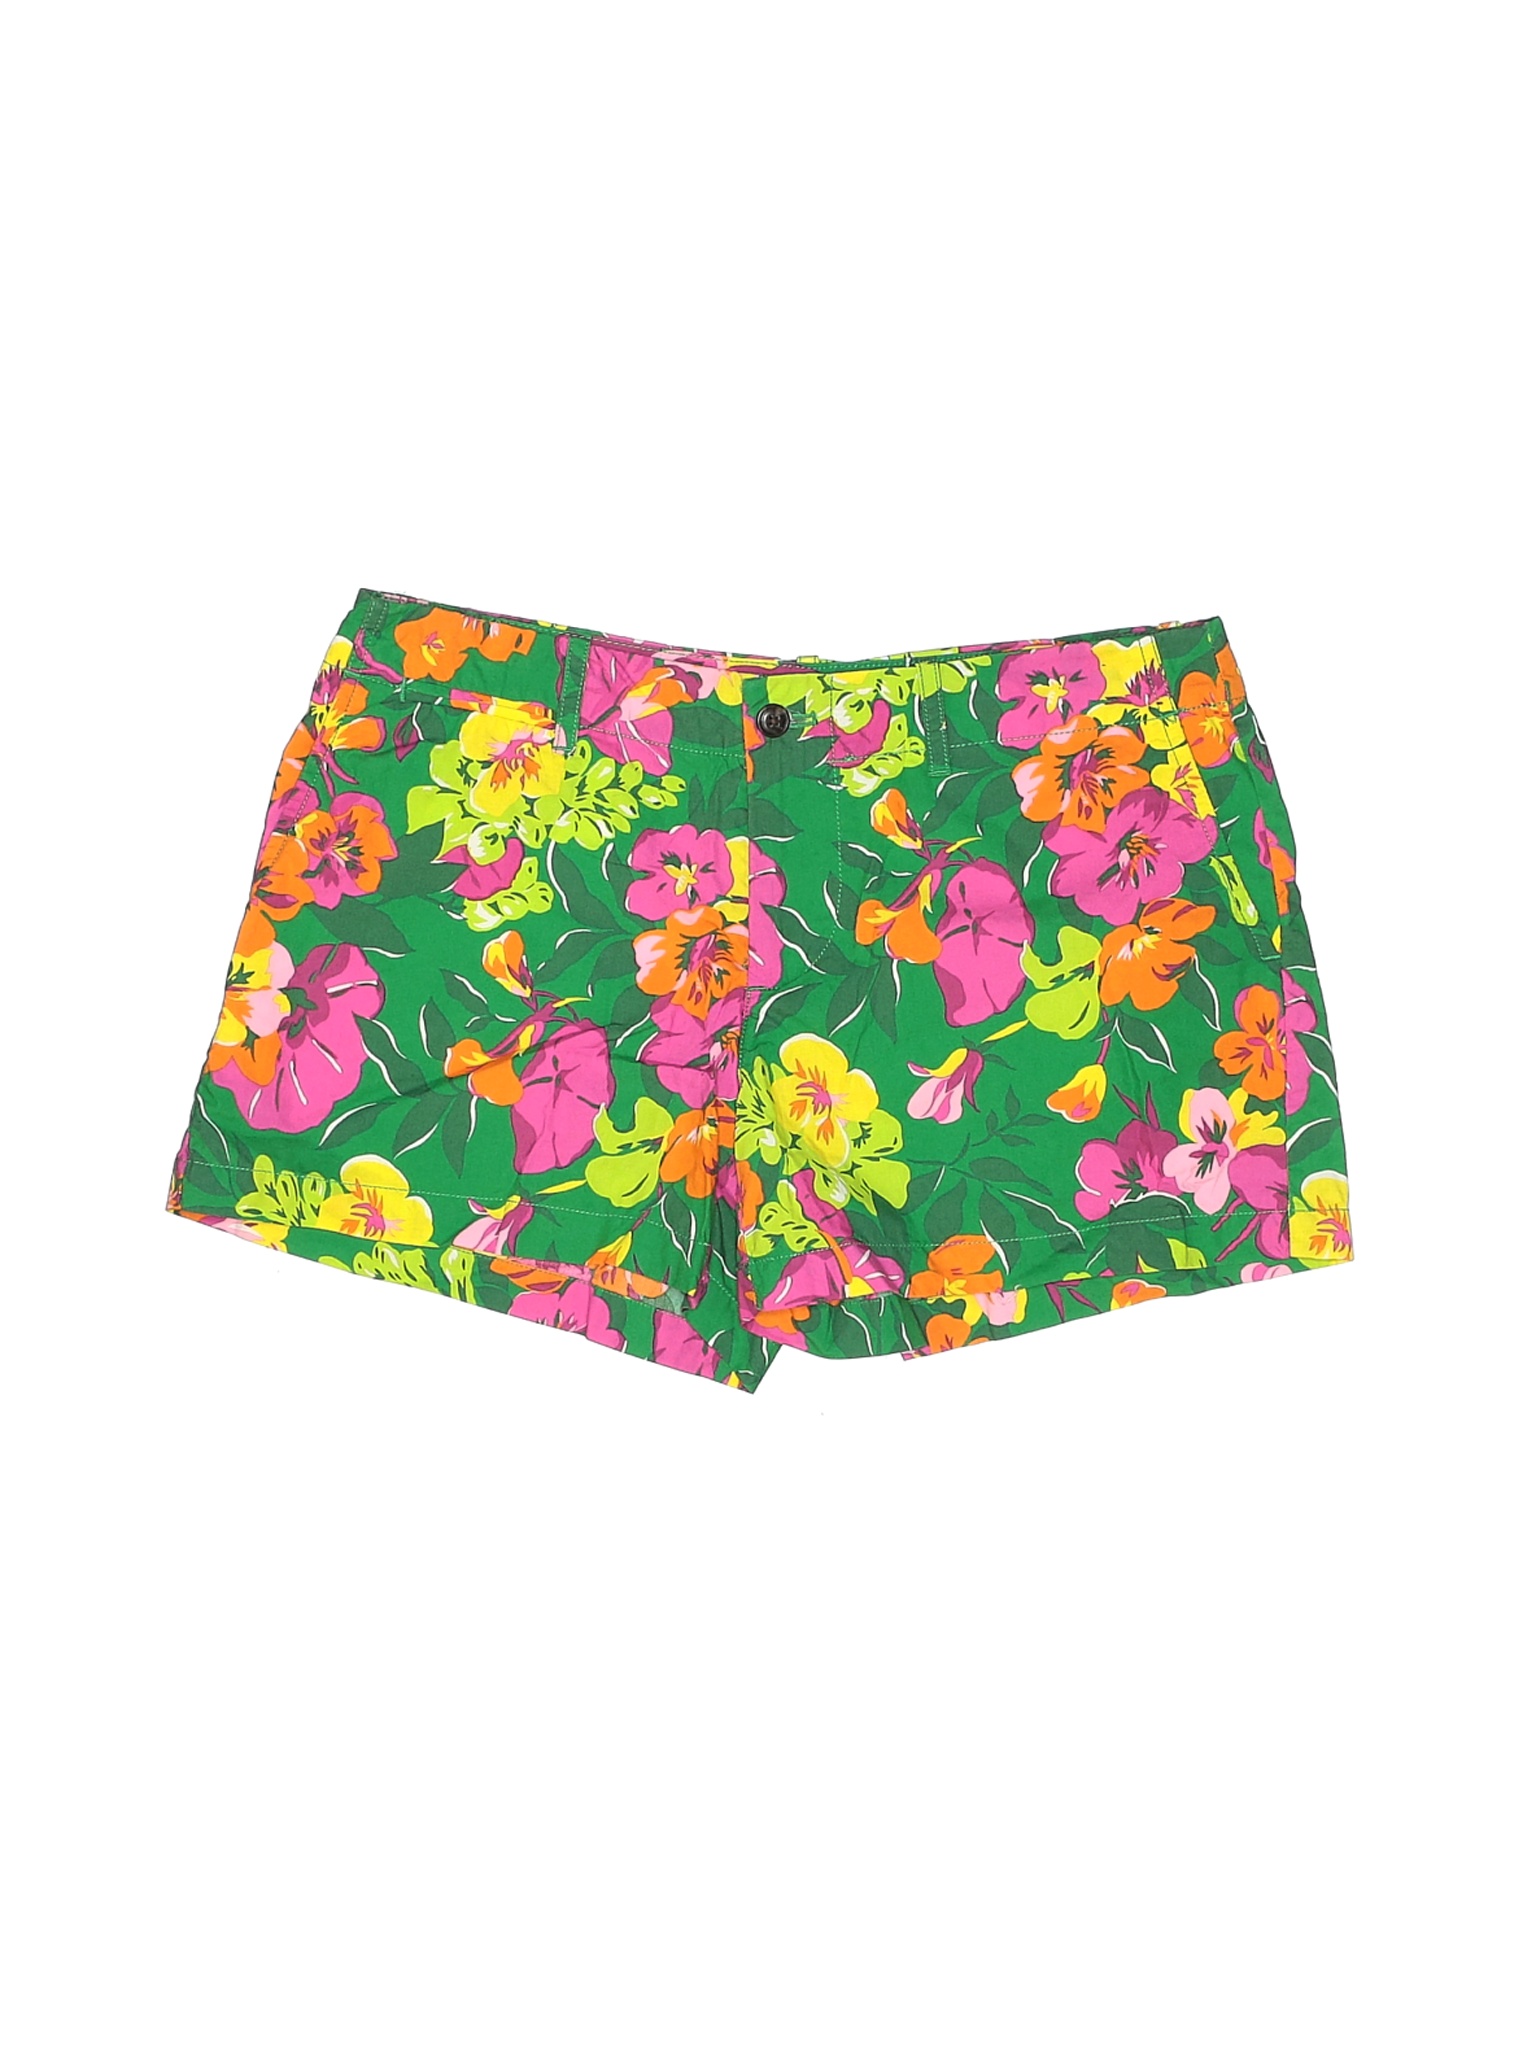 Ralph Lauren Sport Women Green Shorts 4 | eBay